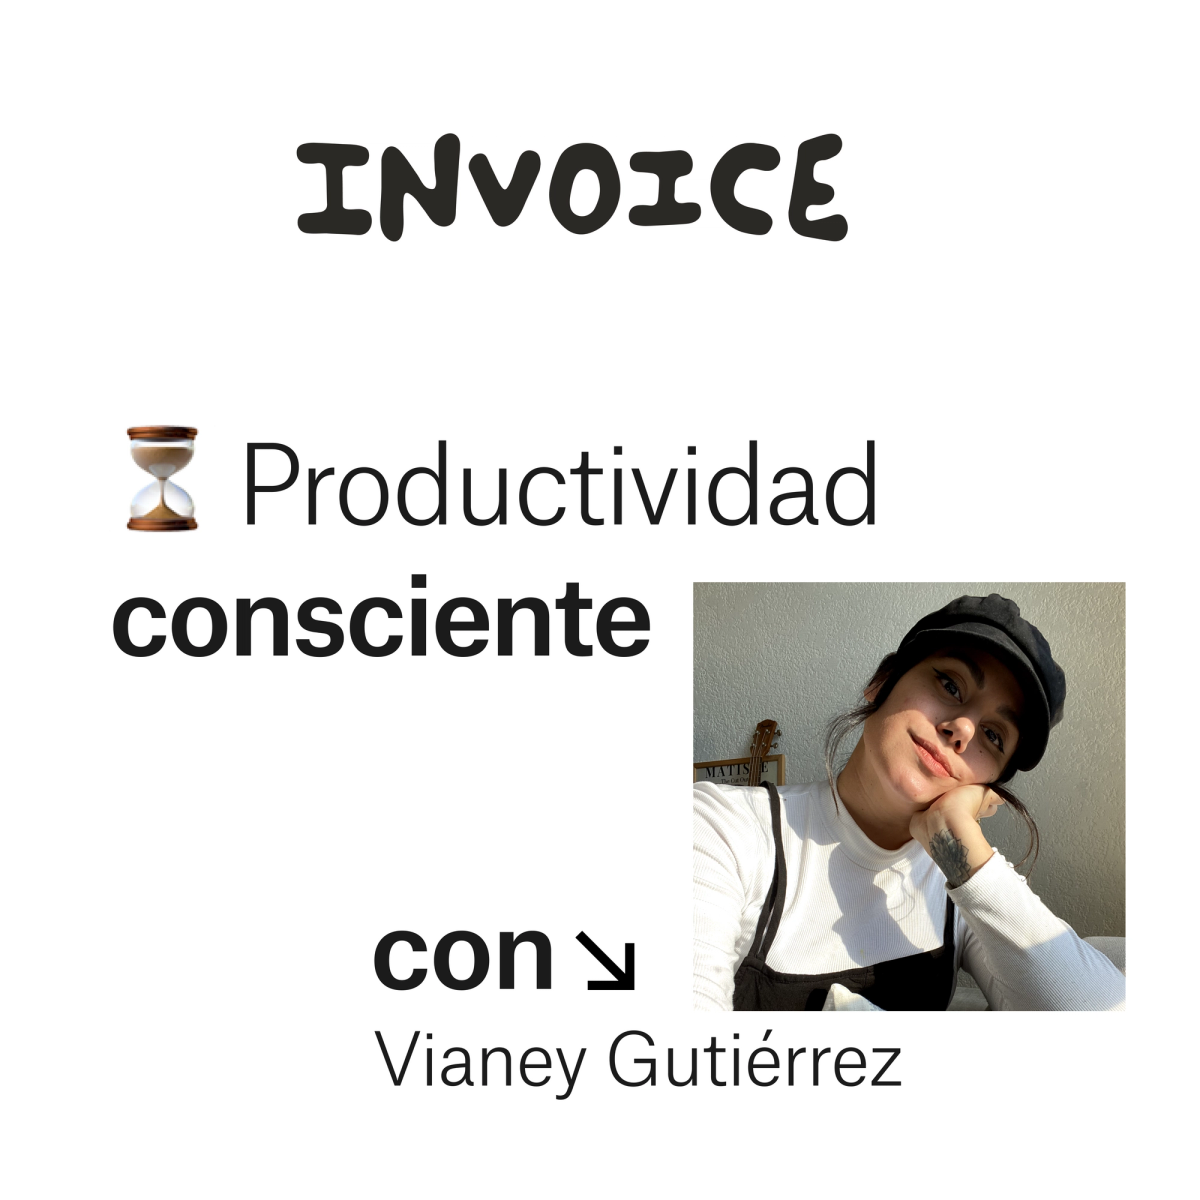 Productividad consciente con Vianey Gutiérrez, dueña de Maindo Studio Mindfulness